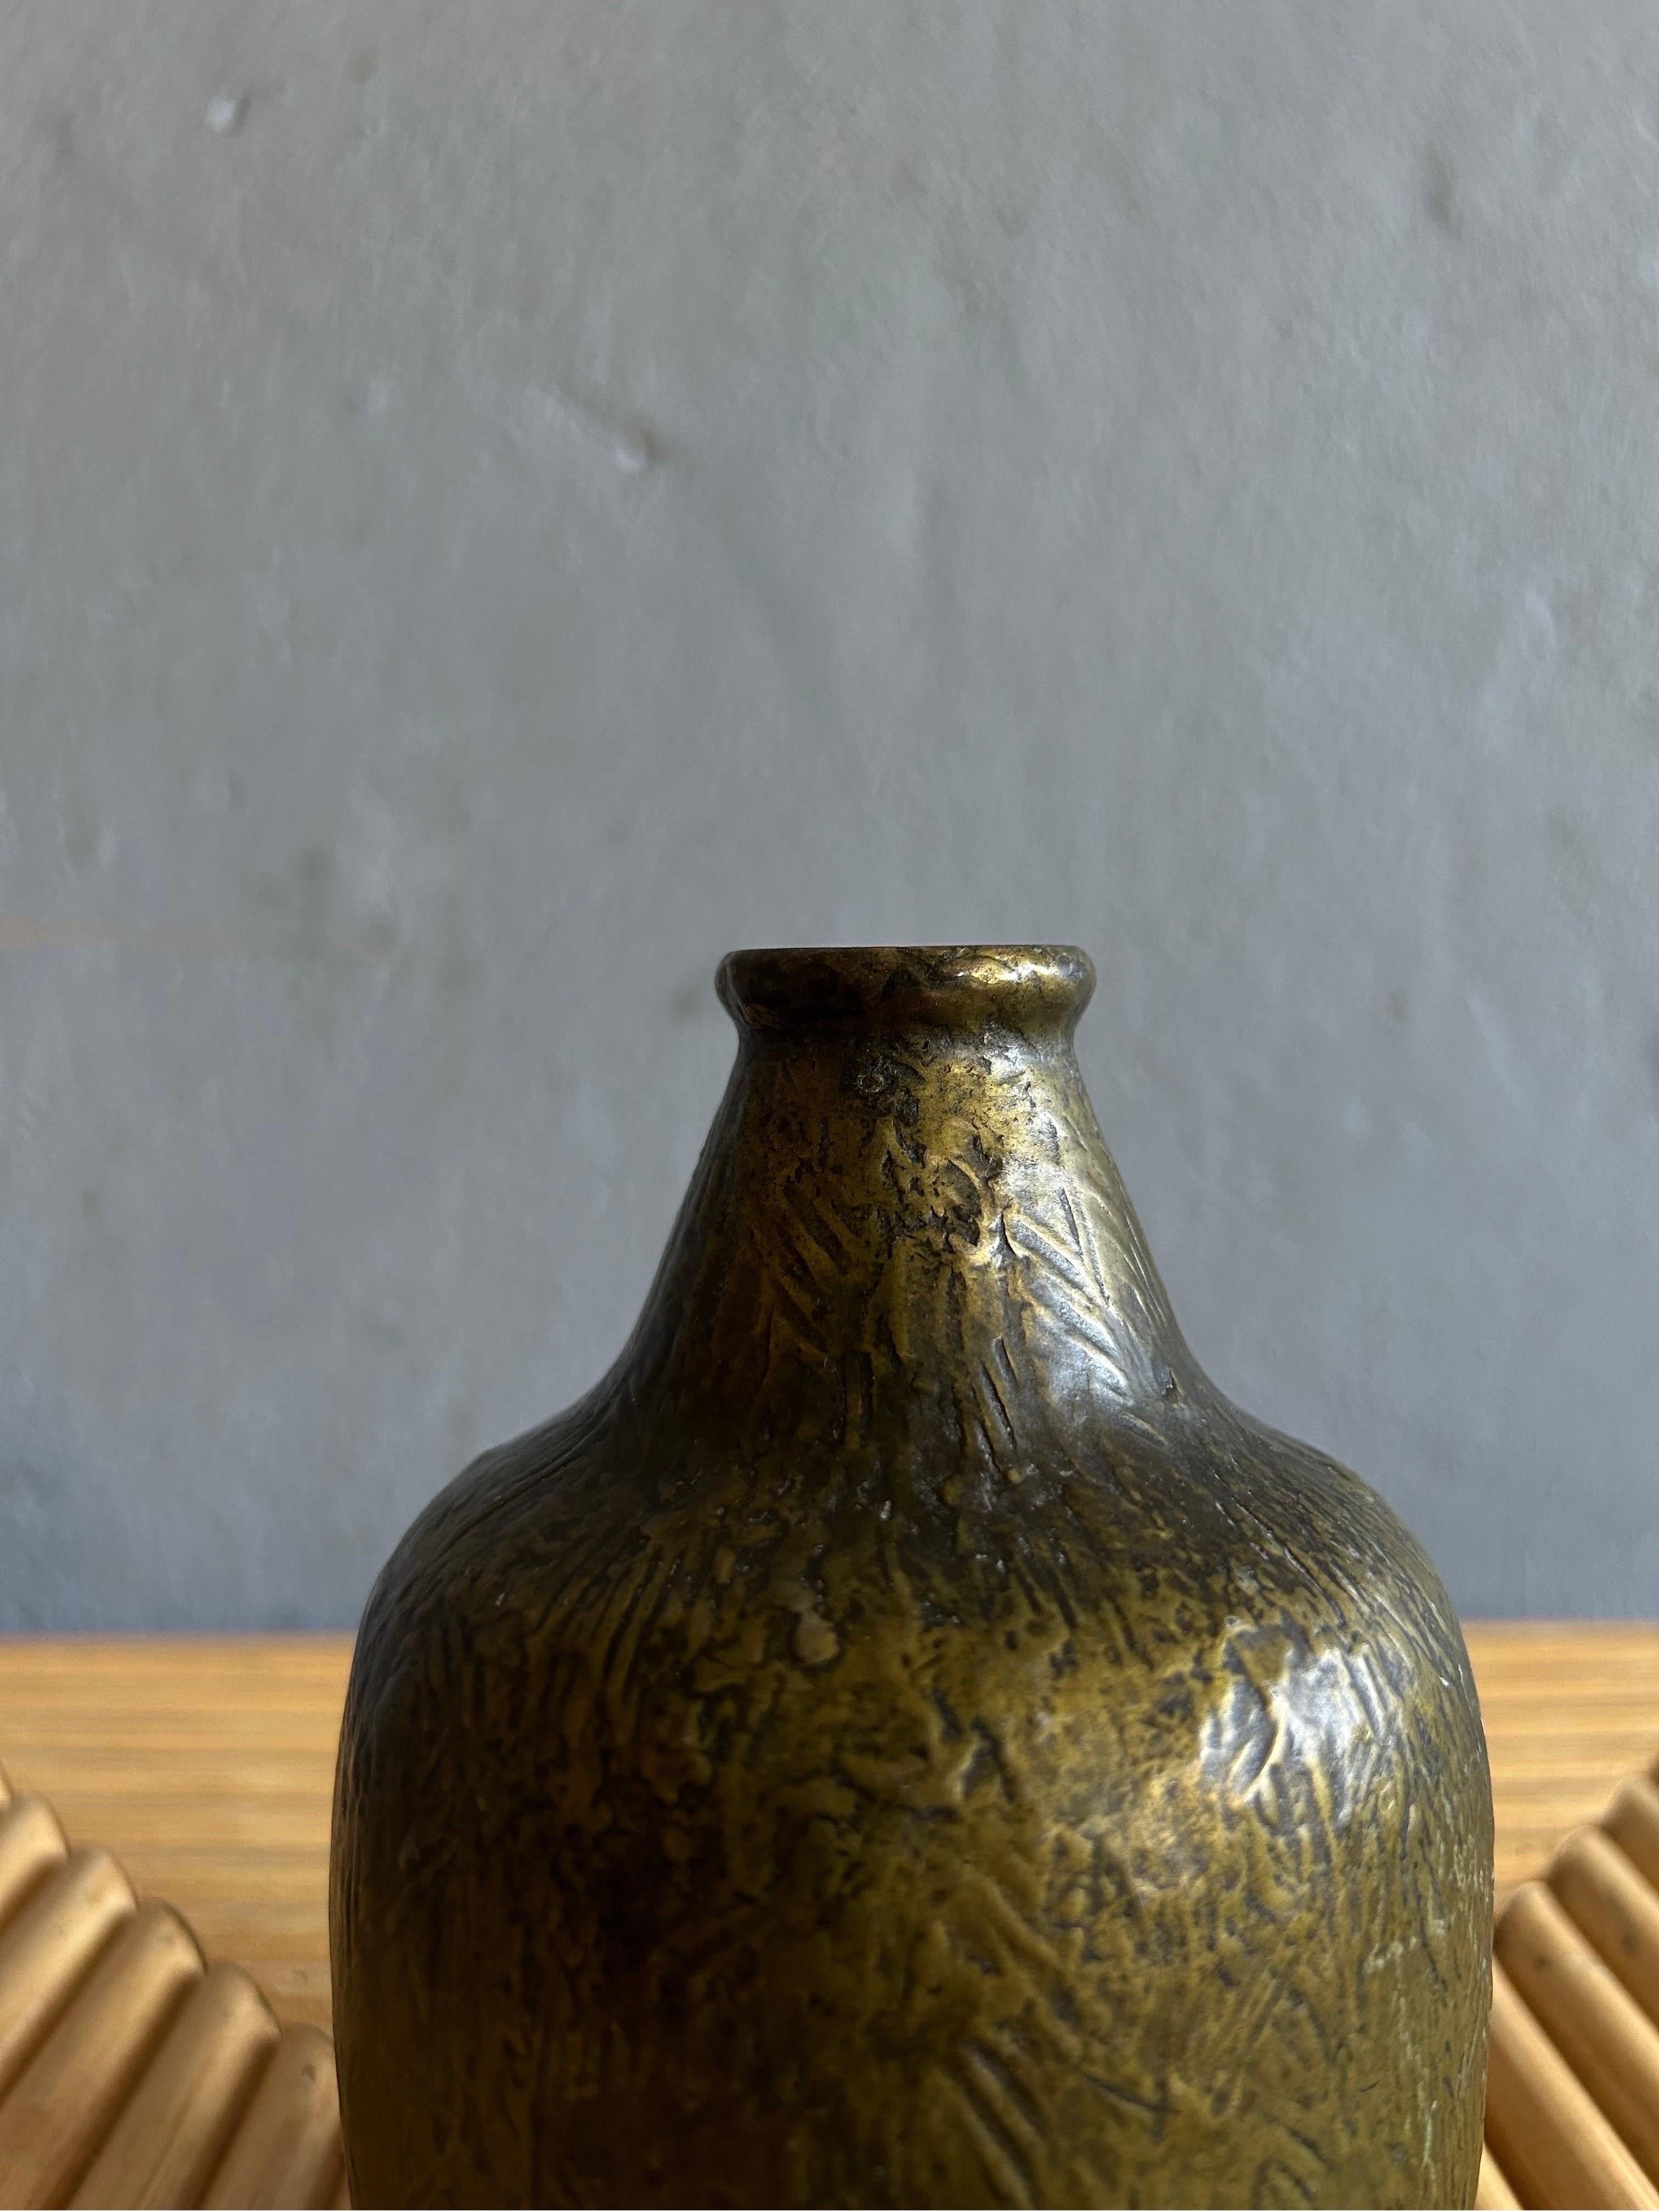 Seltene Bronzevase, die Evan Jensen zugeschrieben wird und in Dänemark in den 1930er Jahren hergestellt wurde.
Die Vase wird von einem unbekannten dänischen Gießer namens Antika hergestellt, hat aber die typische Evan Jensen-Form und die typischen